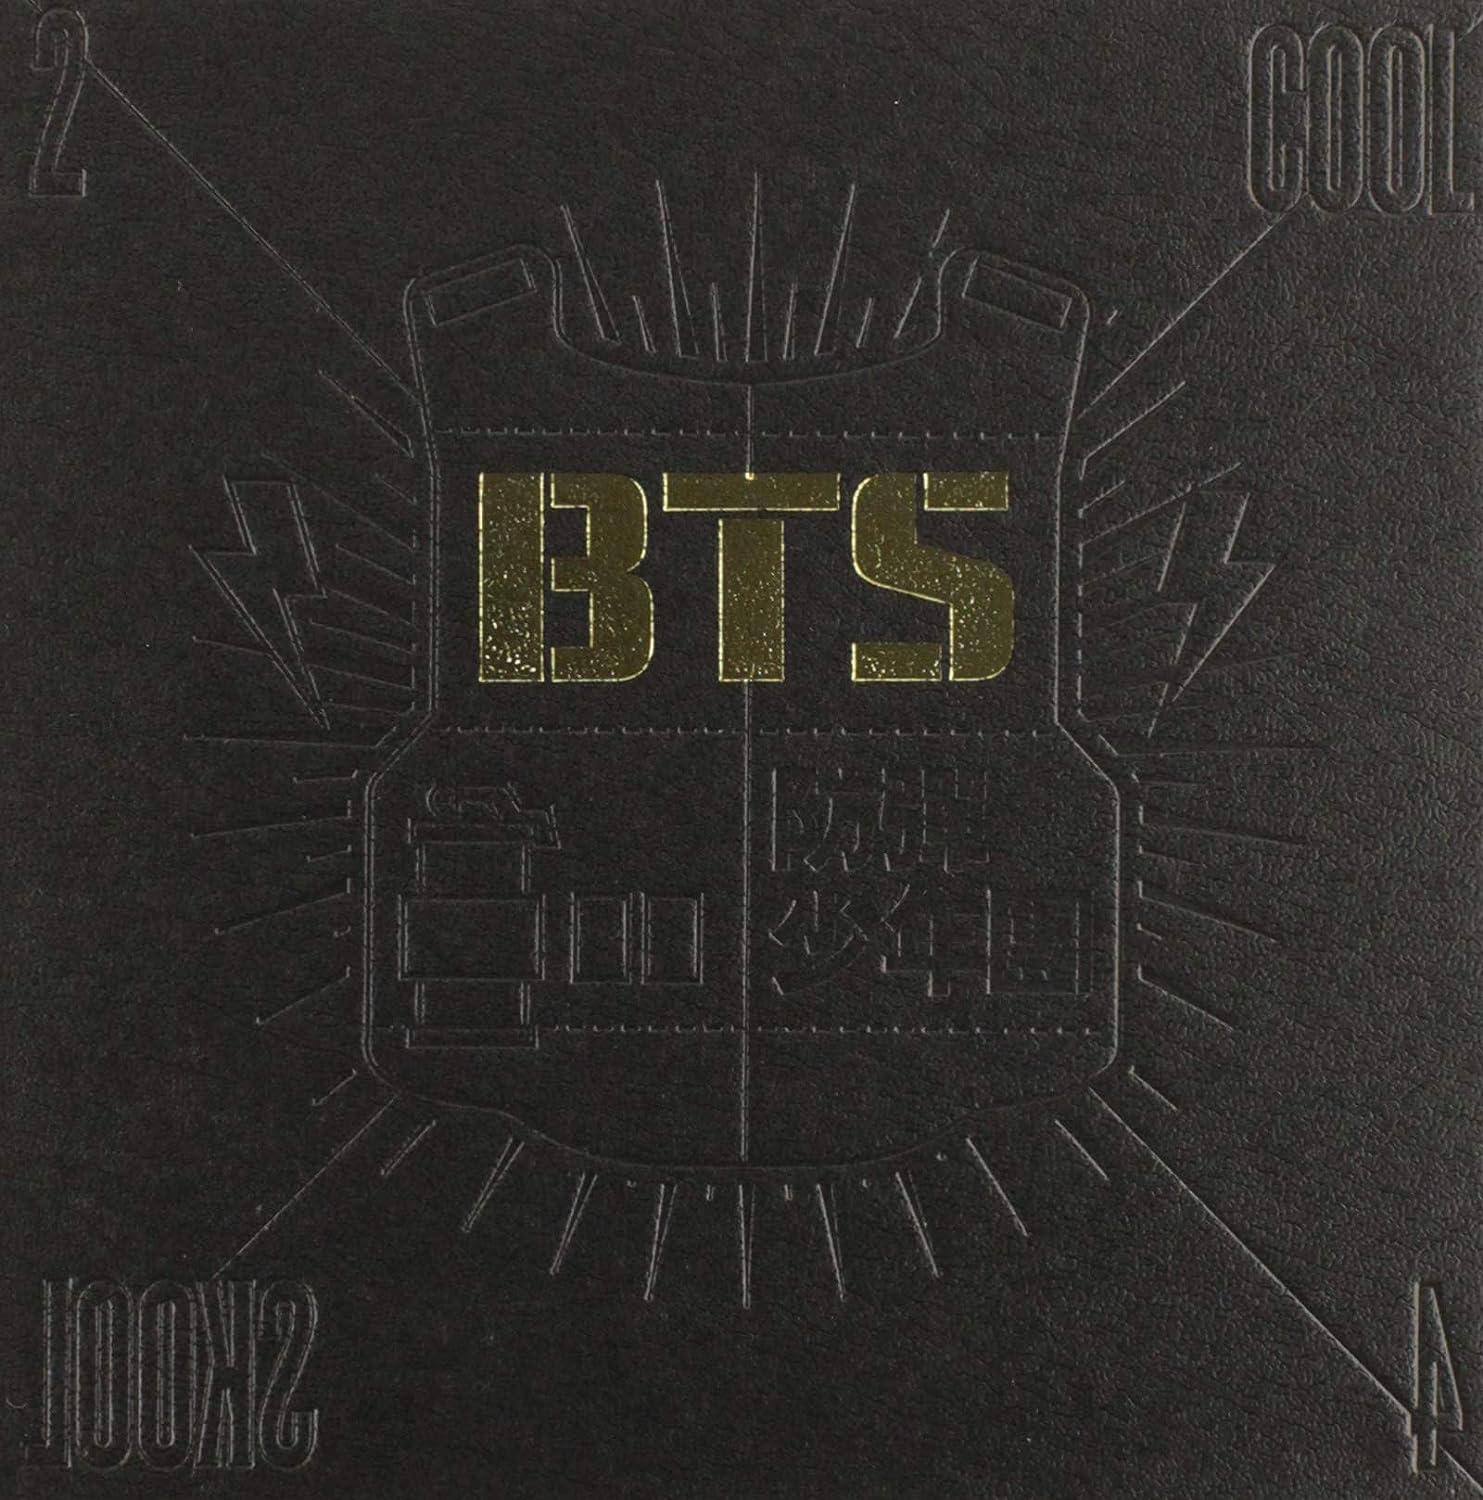 BTS - 2 COOL 4 SKOOL (2013) CD